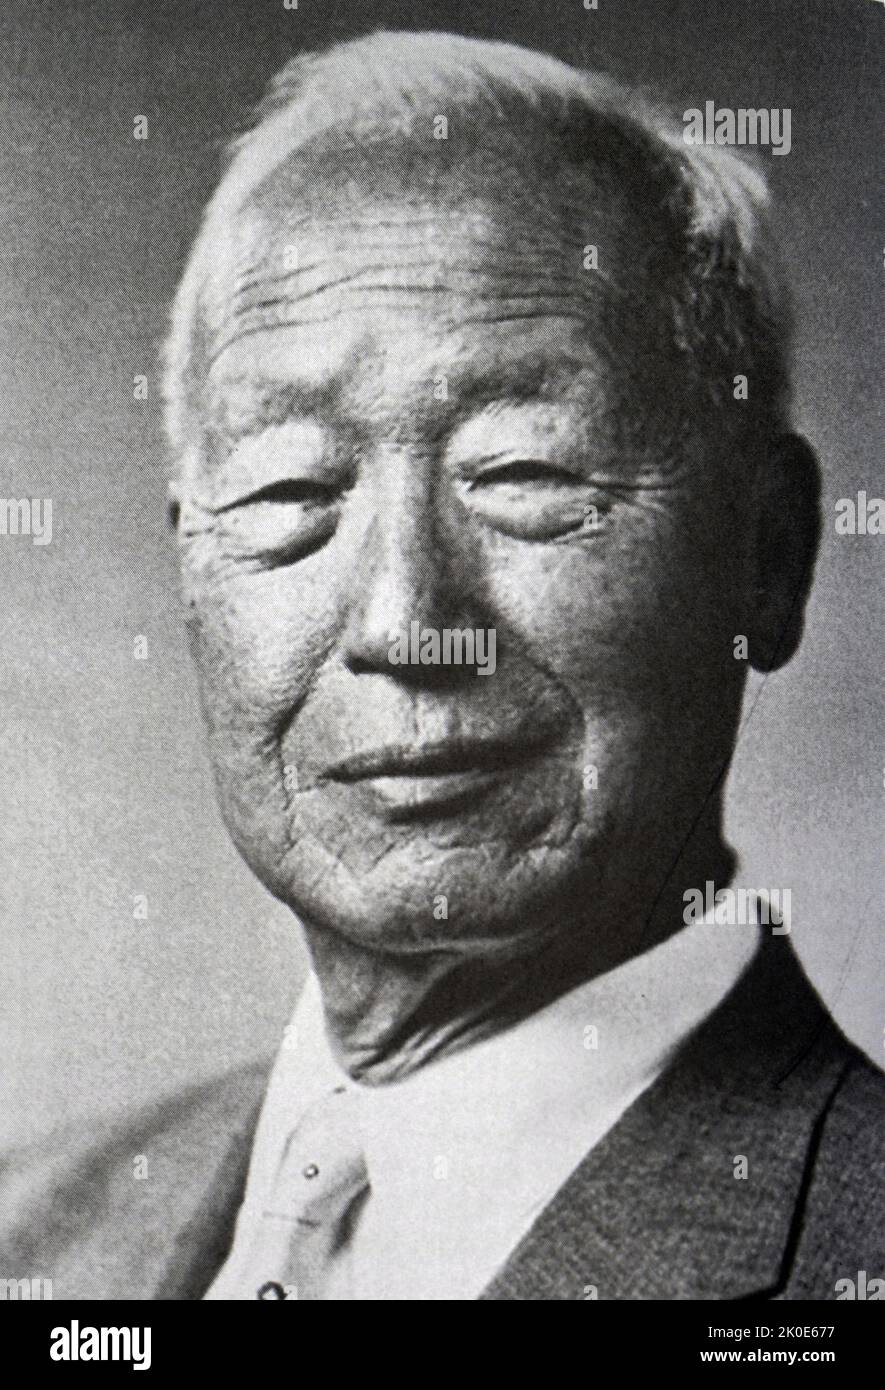 Syngman Rhee (1875 - 1965) politico sudcoreano che è stato il primo presidente della Corea del Sud dal 1948 al 1960. Rhee è stato anche il primo e ultimo presidente del governo provvisorio della Repubblica di Corea dal 1919 al suo impeachment nel 1925 e dal 1947 al 1948. Foto Stock